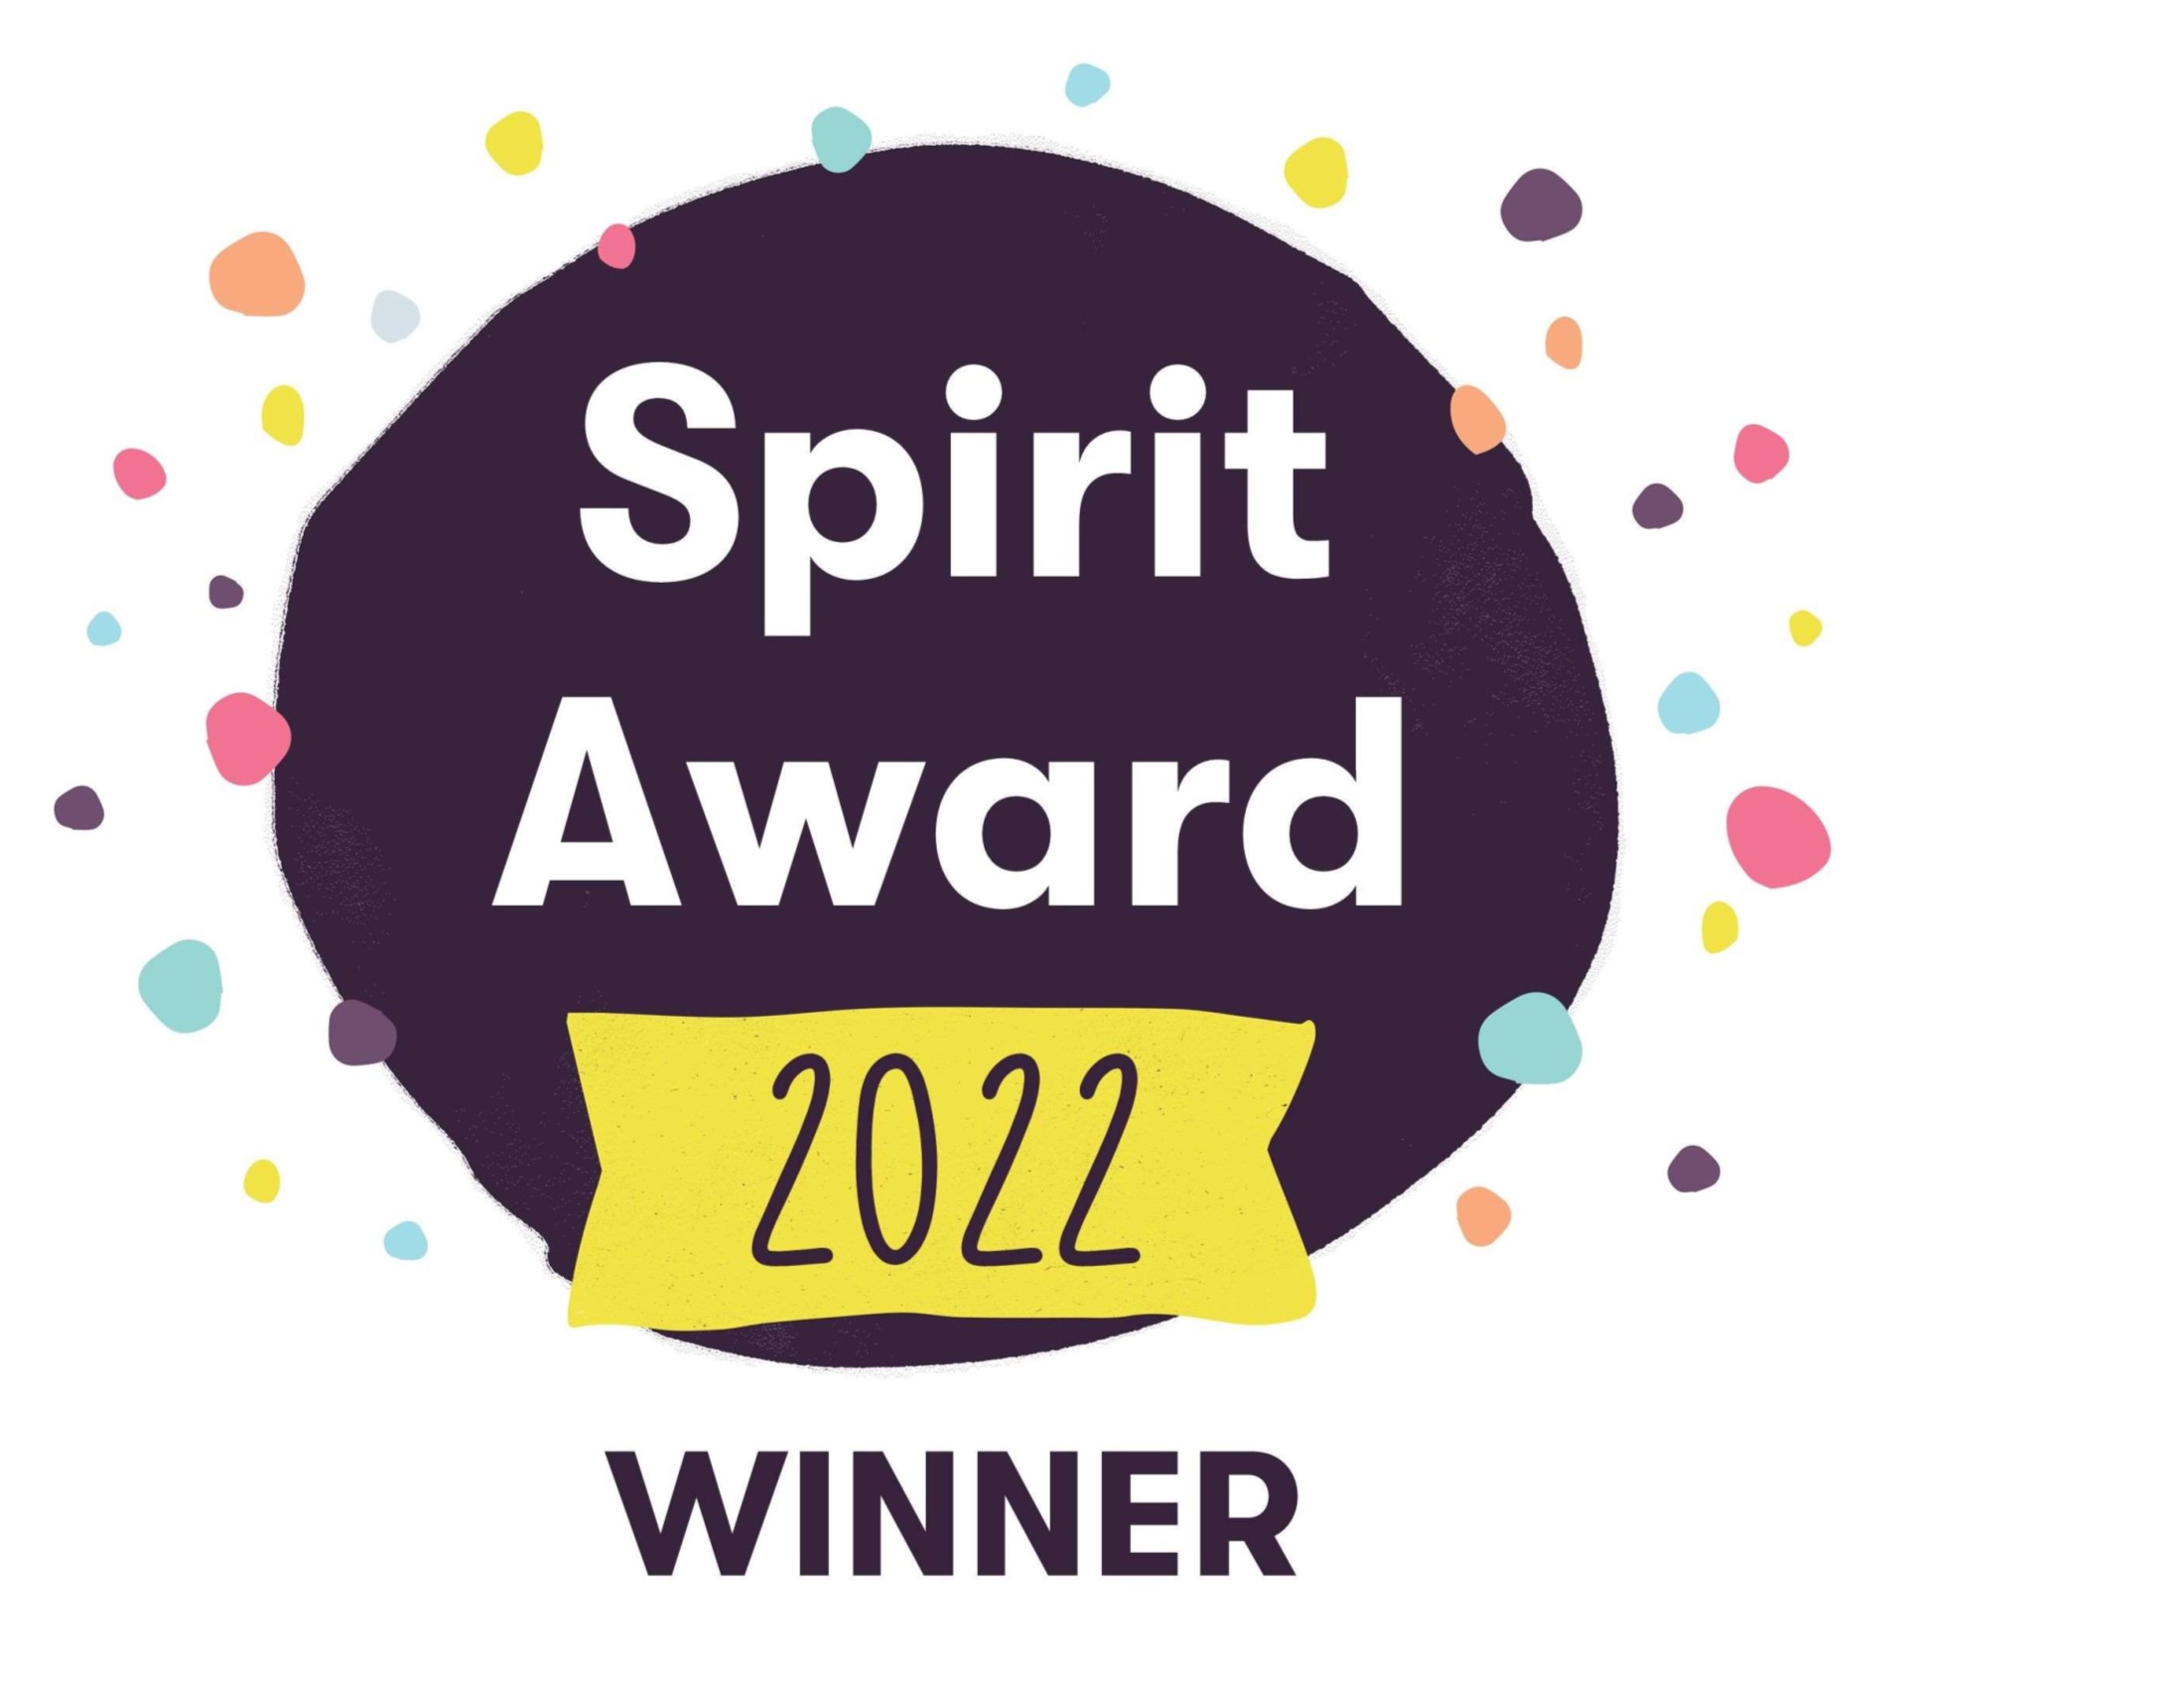 Spirit Award 2022 Winner